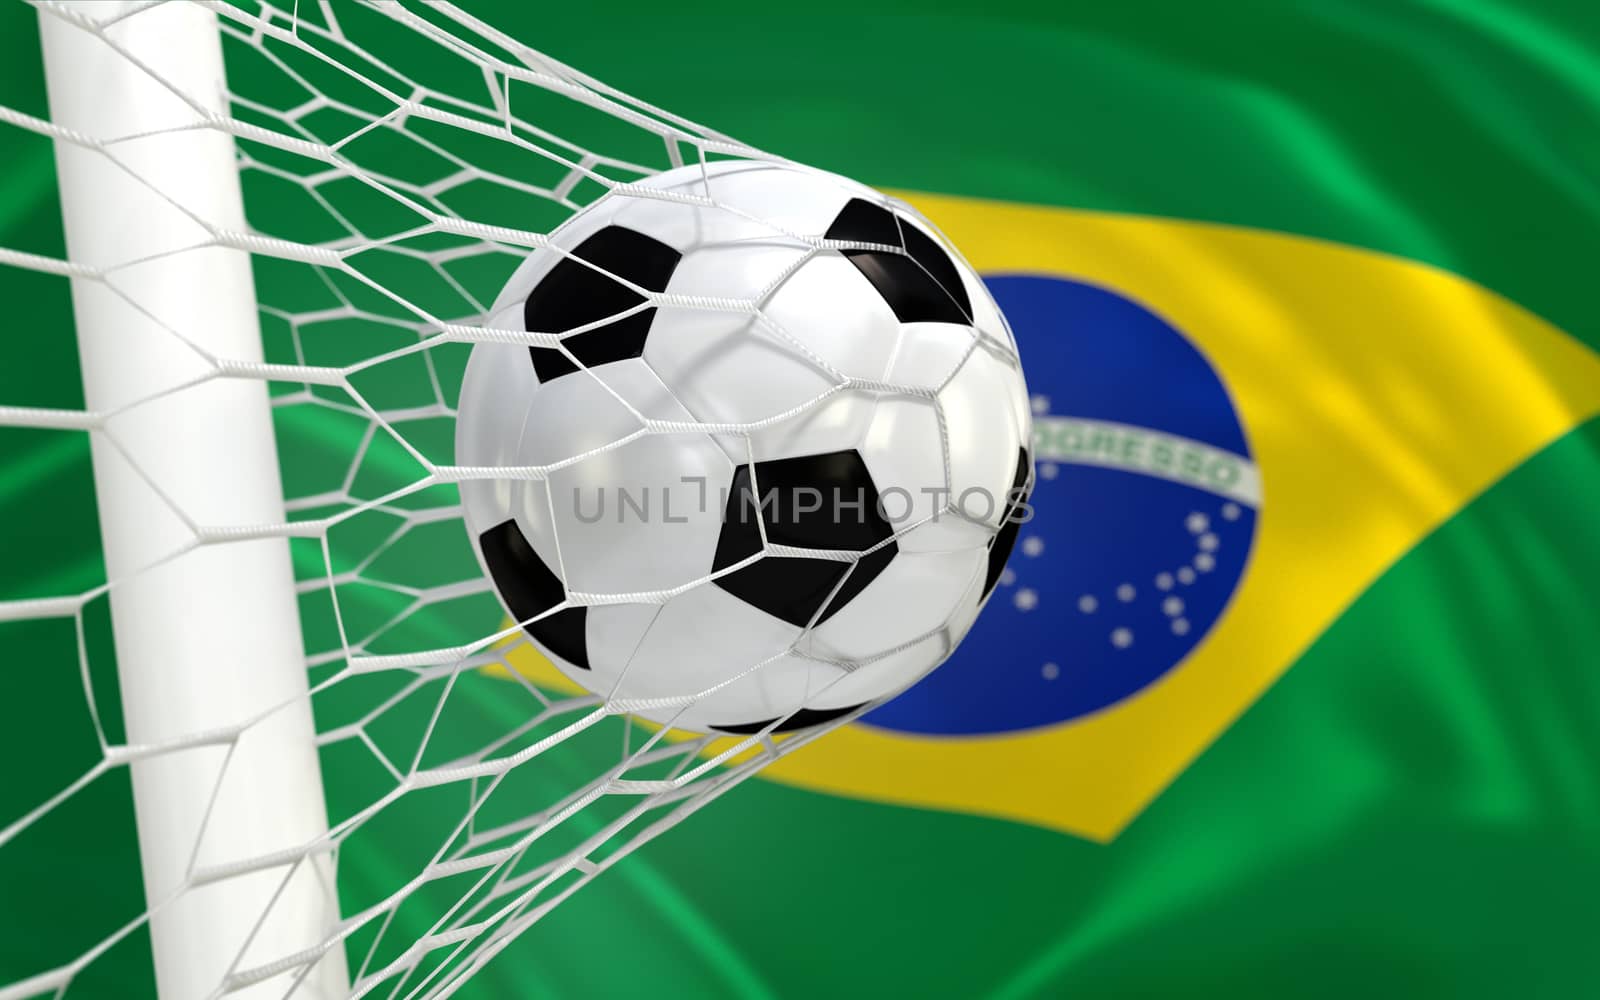 Brazil waving flag and soccer ball in goal net by Barbraford